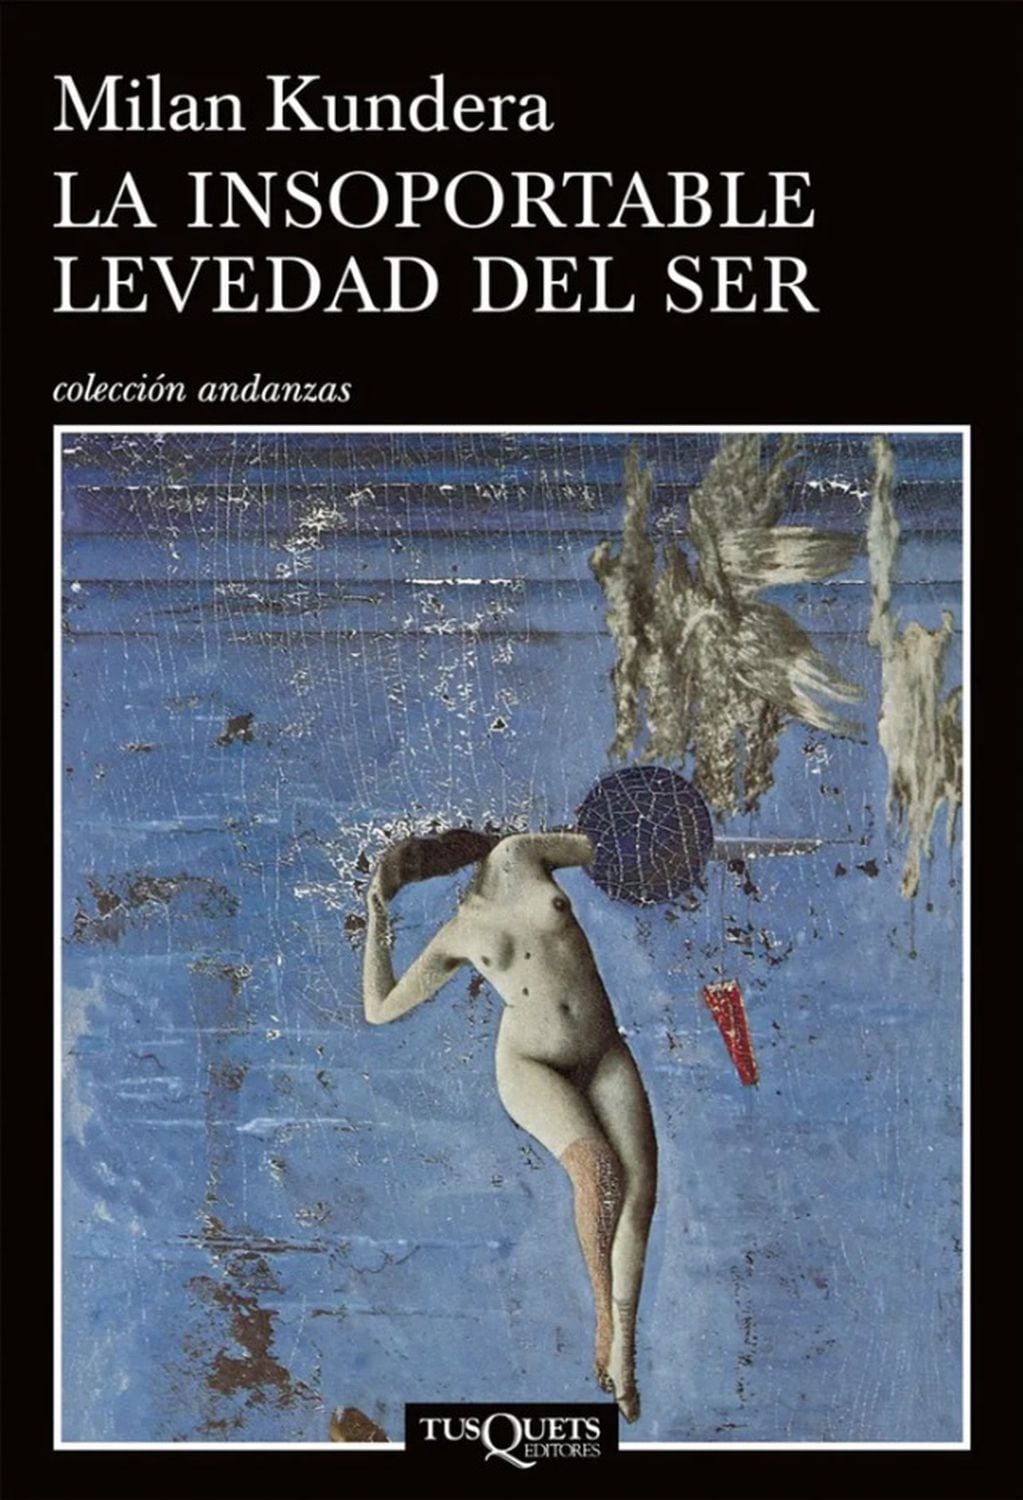 "La insoportable levedad del ser", la obra emblemática del novelista Milan Kundera